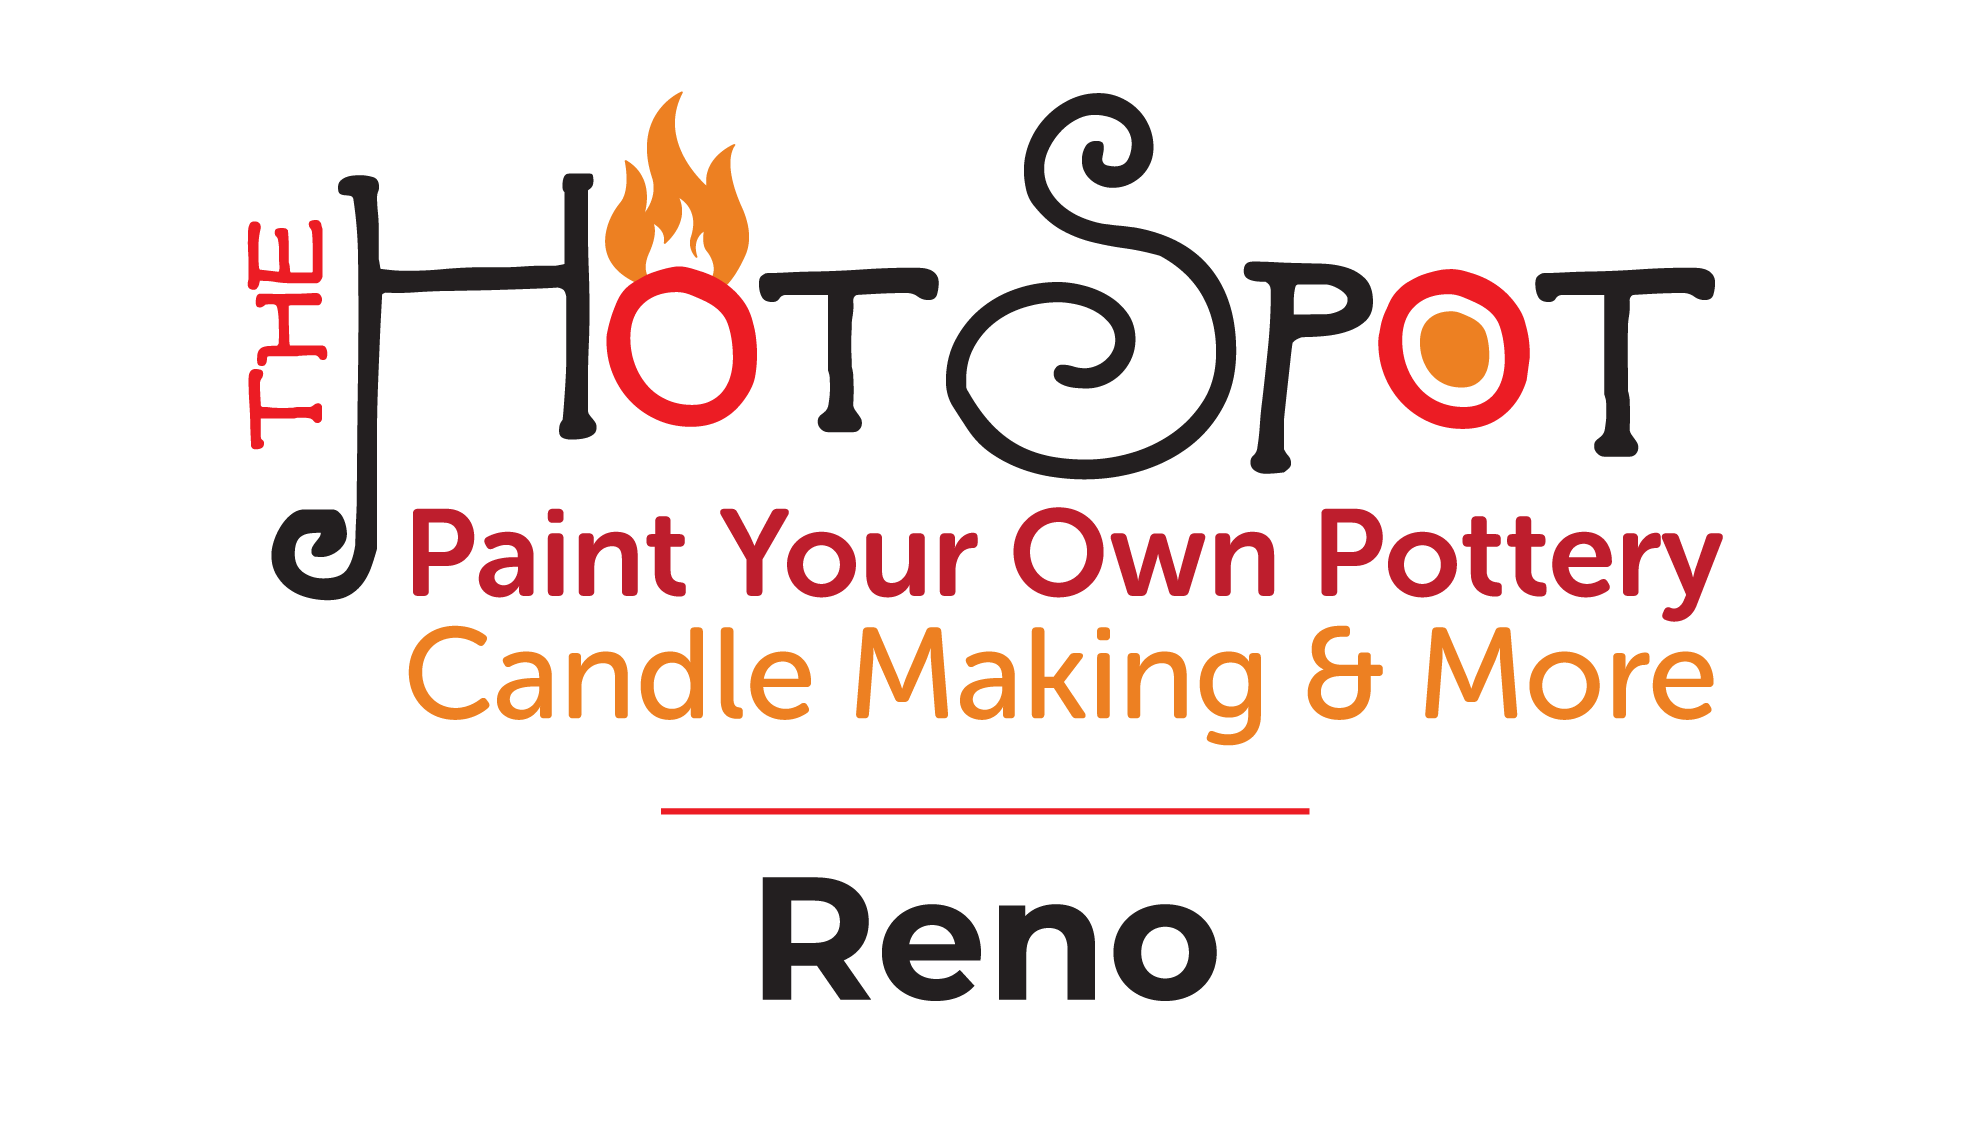 The Hot Spot Studios Reno